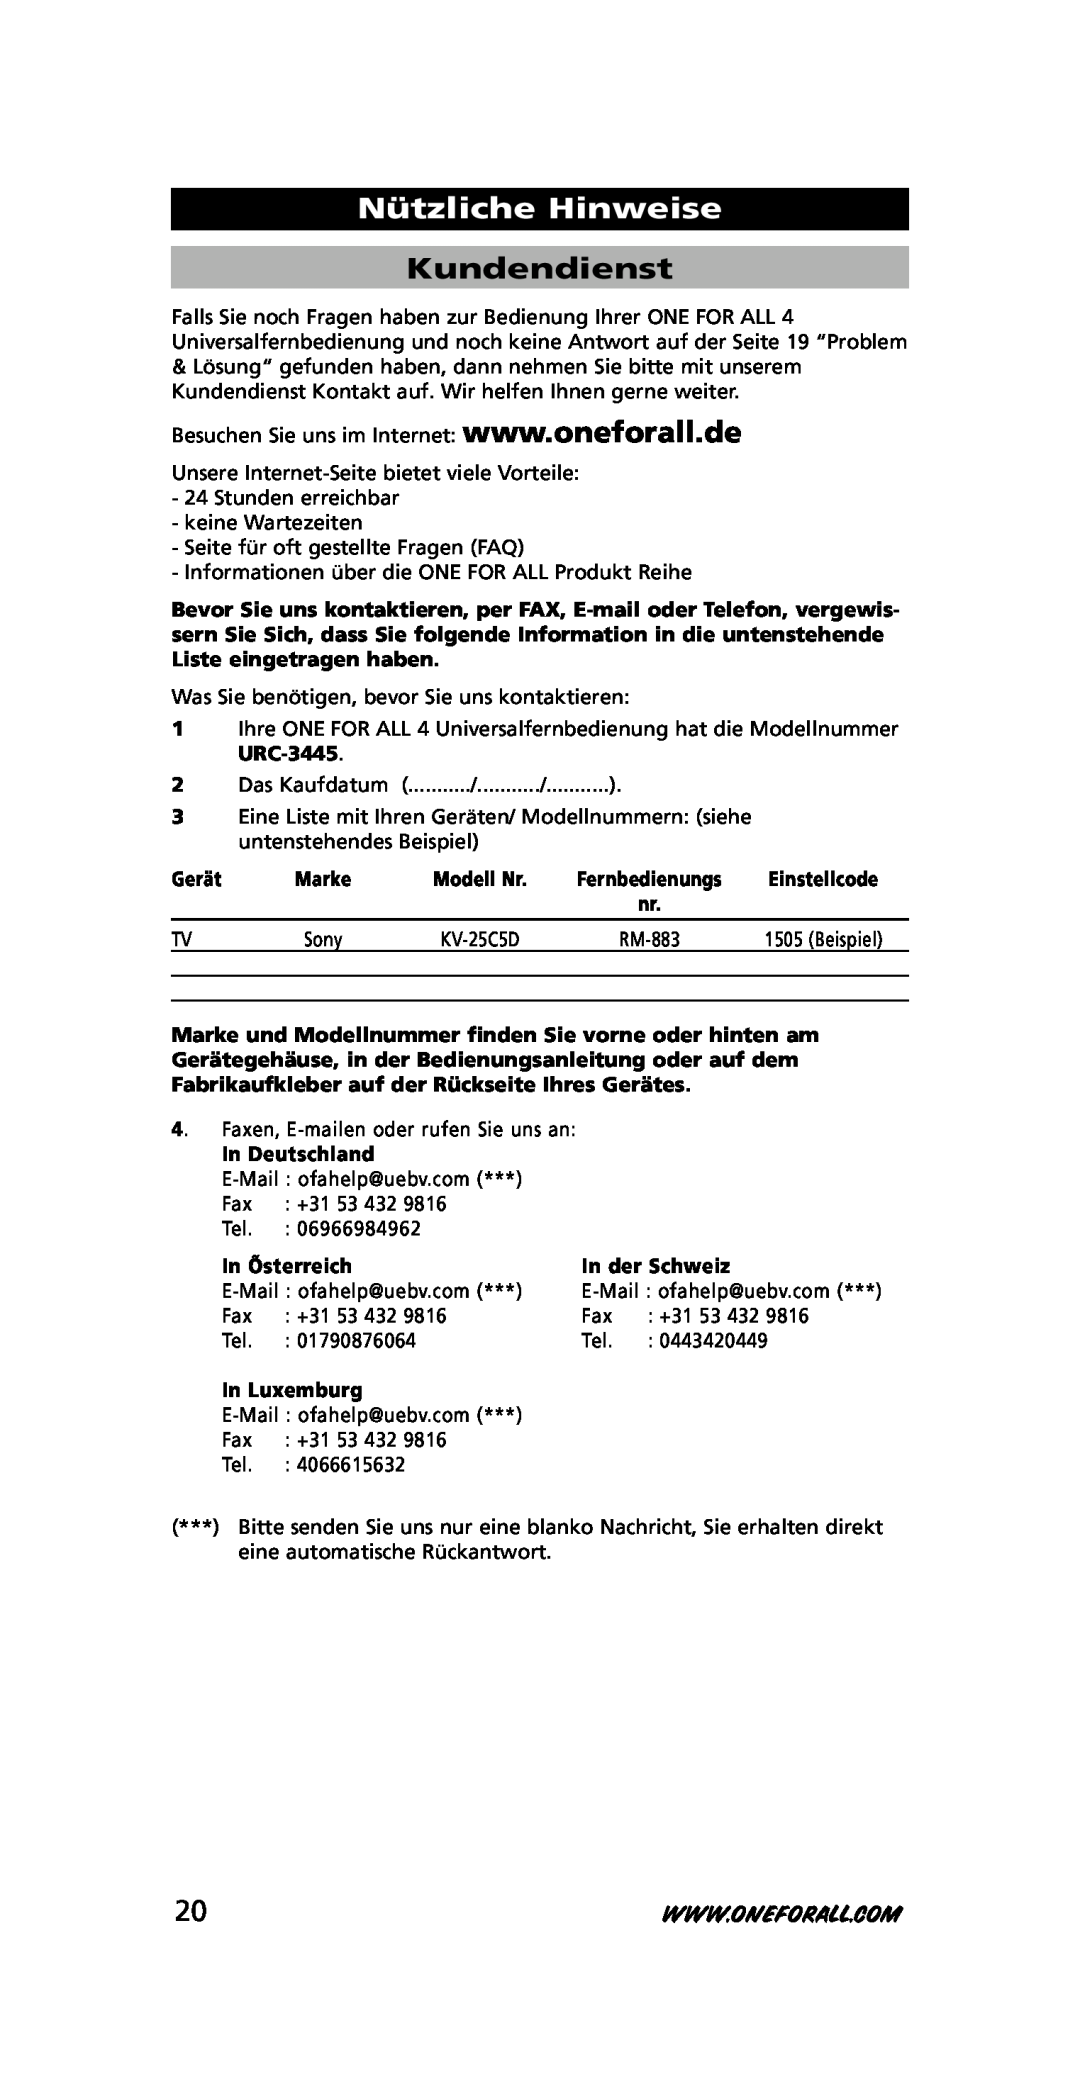 One for All URC-3445 Nützliche Hinweise, Kundendienst, Gerät, In Deutschland, In Õsterreich, In der Sc hweiz, In Luxemburg 